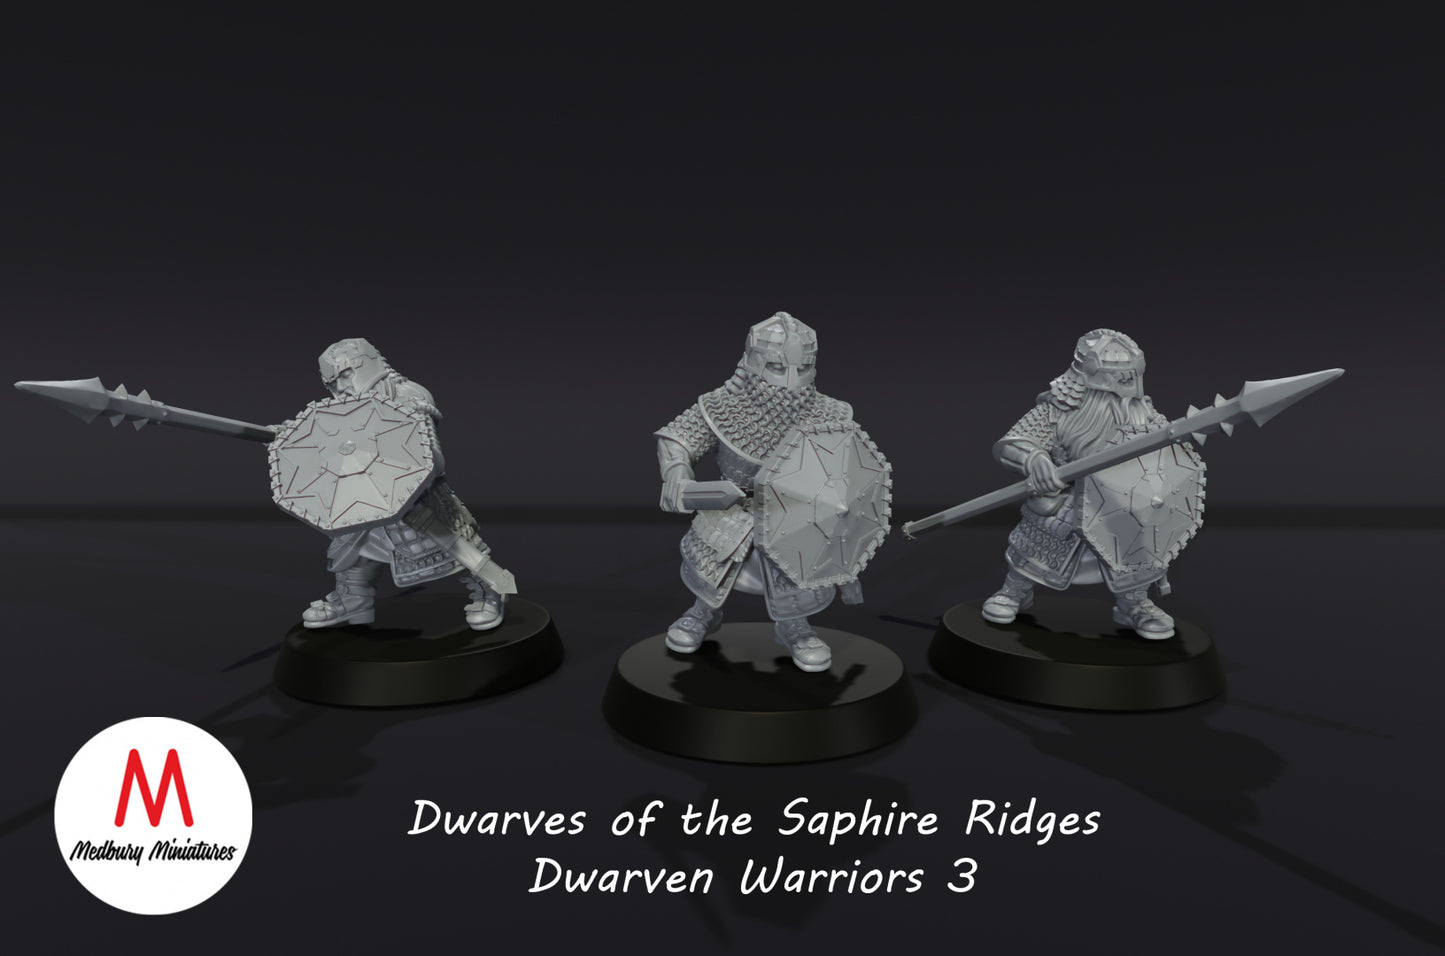 Dwarves of the Saphire Ridges Dwarf Warriors (2 versiones)